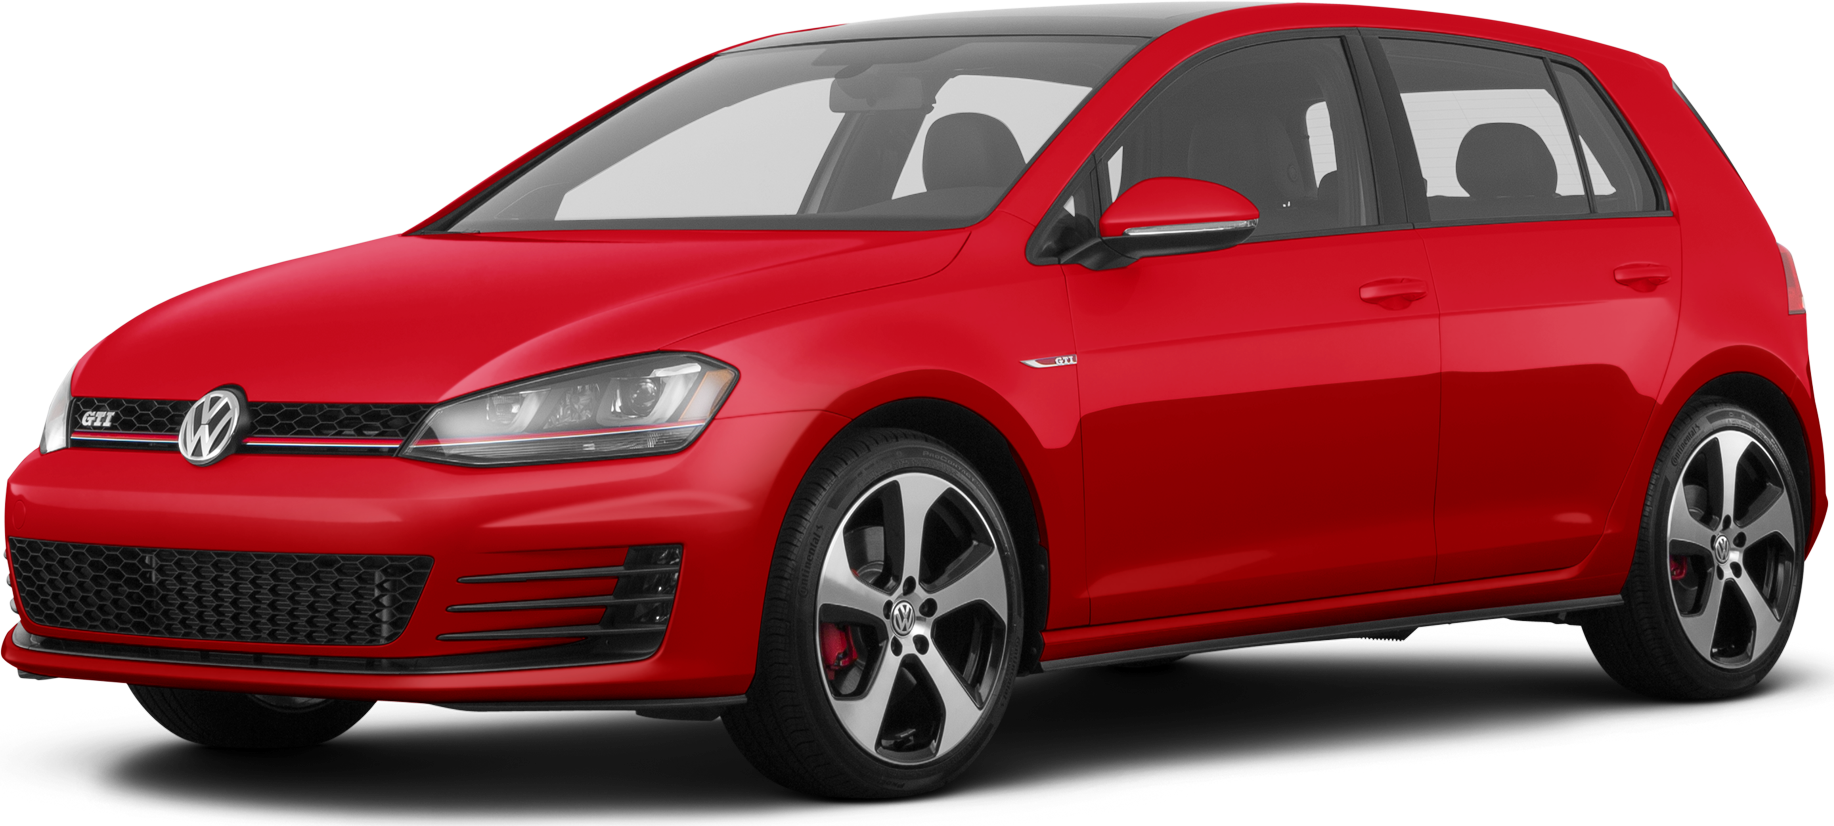 2018 Volkswagen Golf GTI Price, Value, Ratings & Reviews